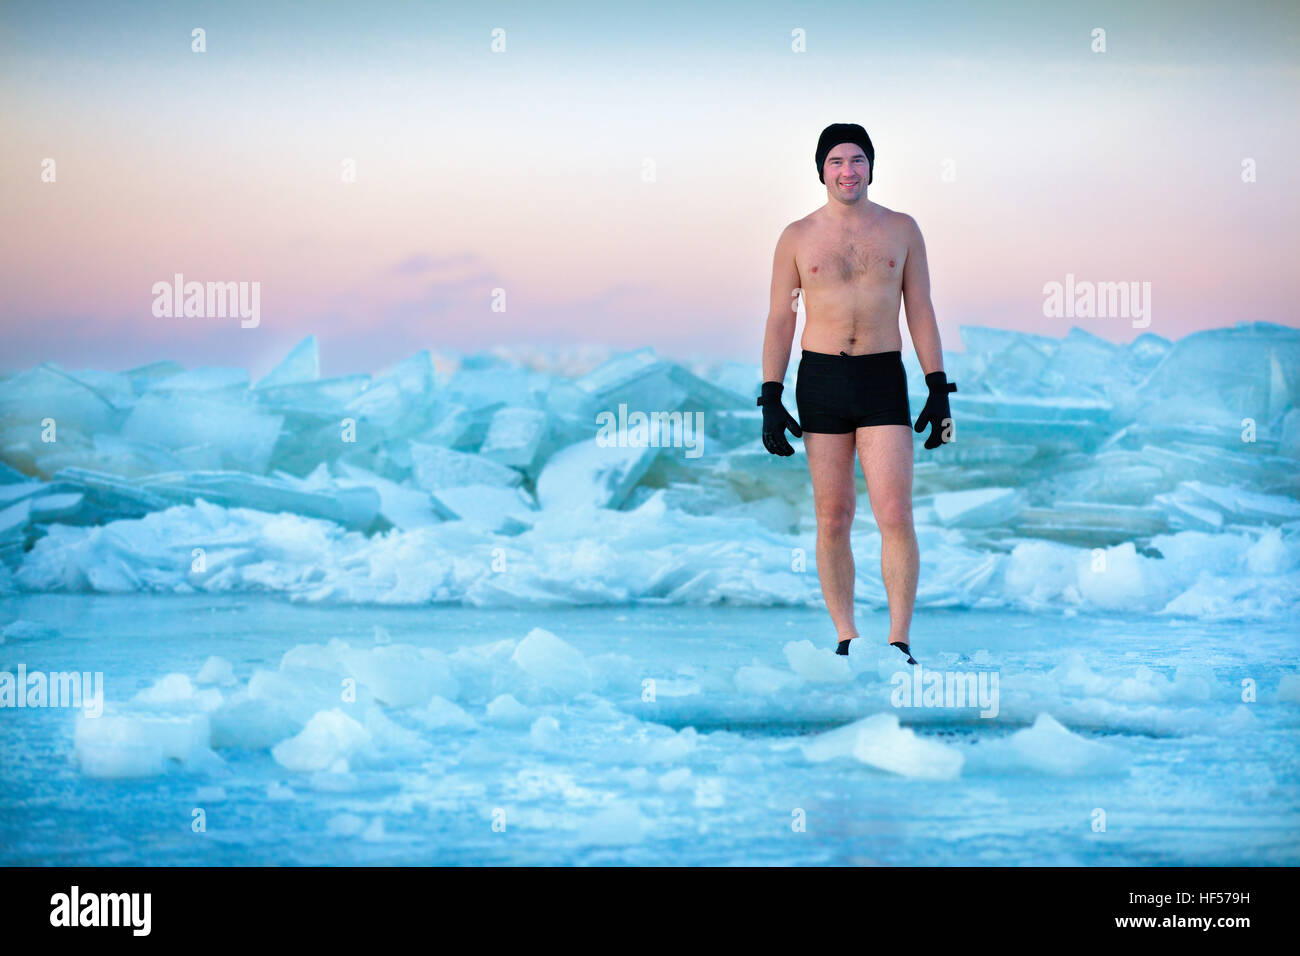 El hombre va a nadar en un agujero de hielo. Foto de stock